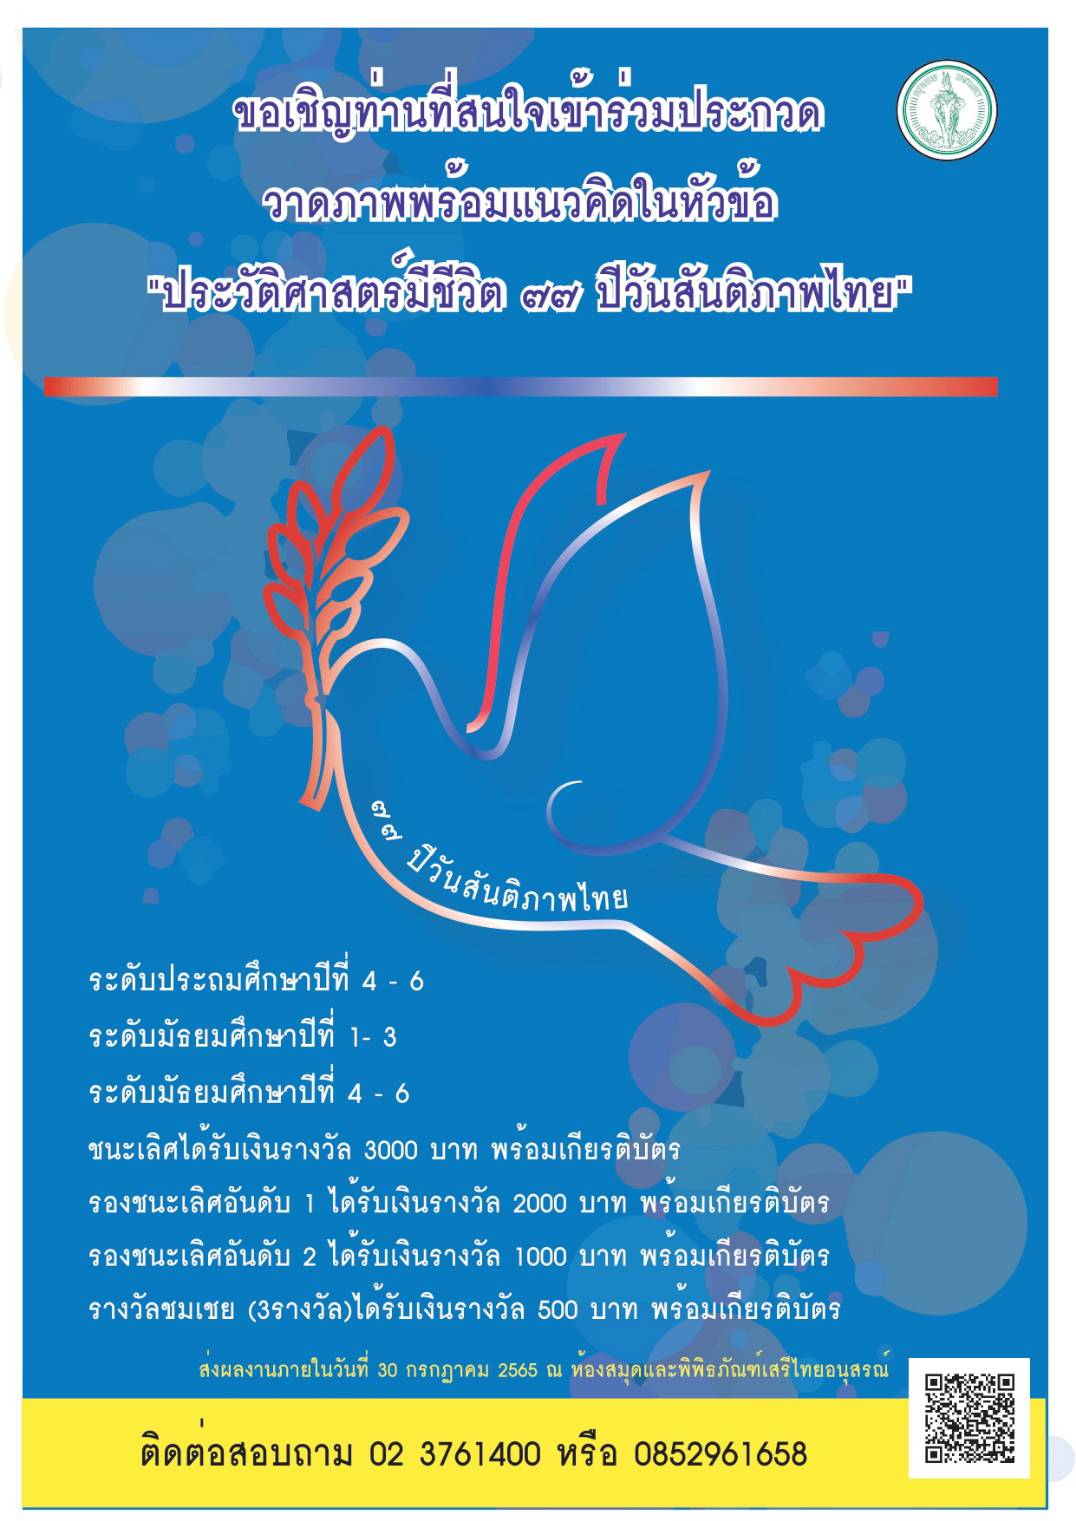 ขอเชิญท่านที่สนใจเข้าร่วมการประกวดวาดภาพพร้อมแนวคิด ในหัวข้อ “ประวัติศาสตร์มีชีวิต 77 ปี วันสันติภาพไทย”